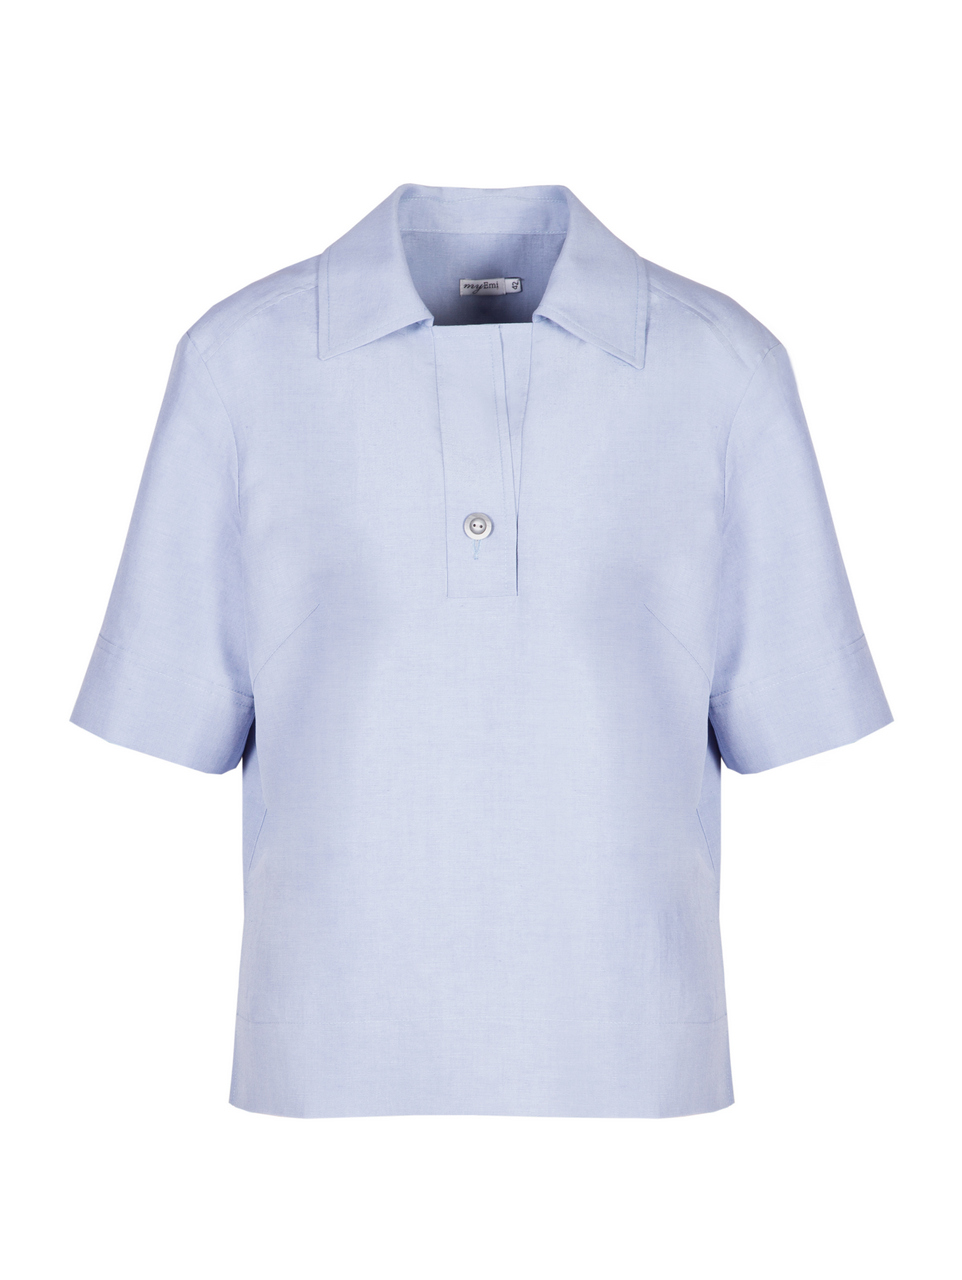 Рубашка-поло с коротким рукавом голубого цвета